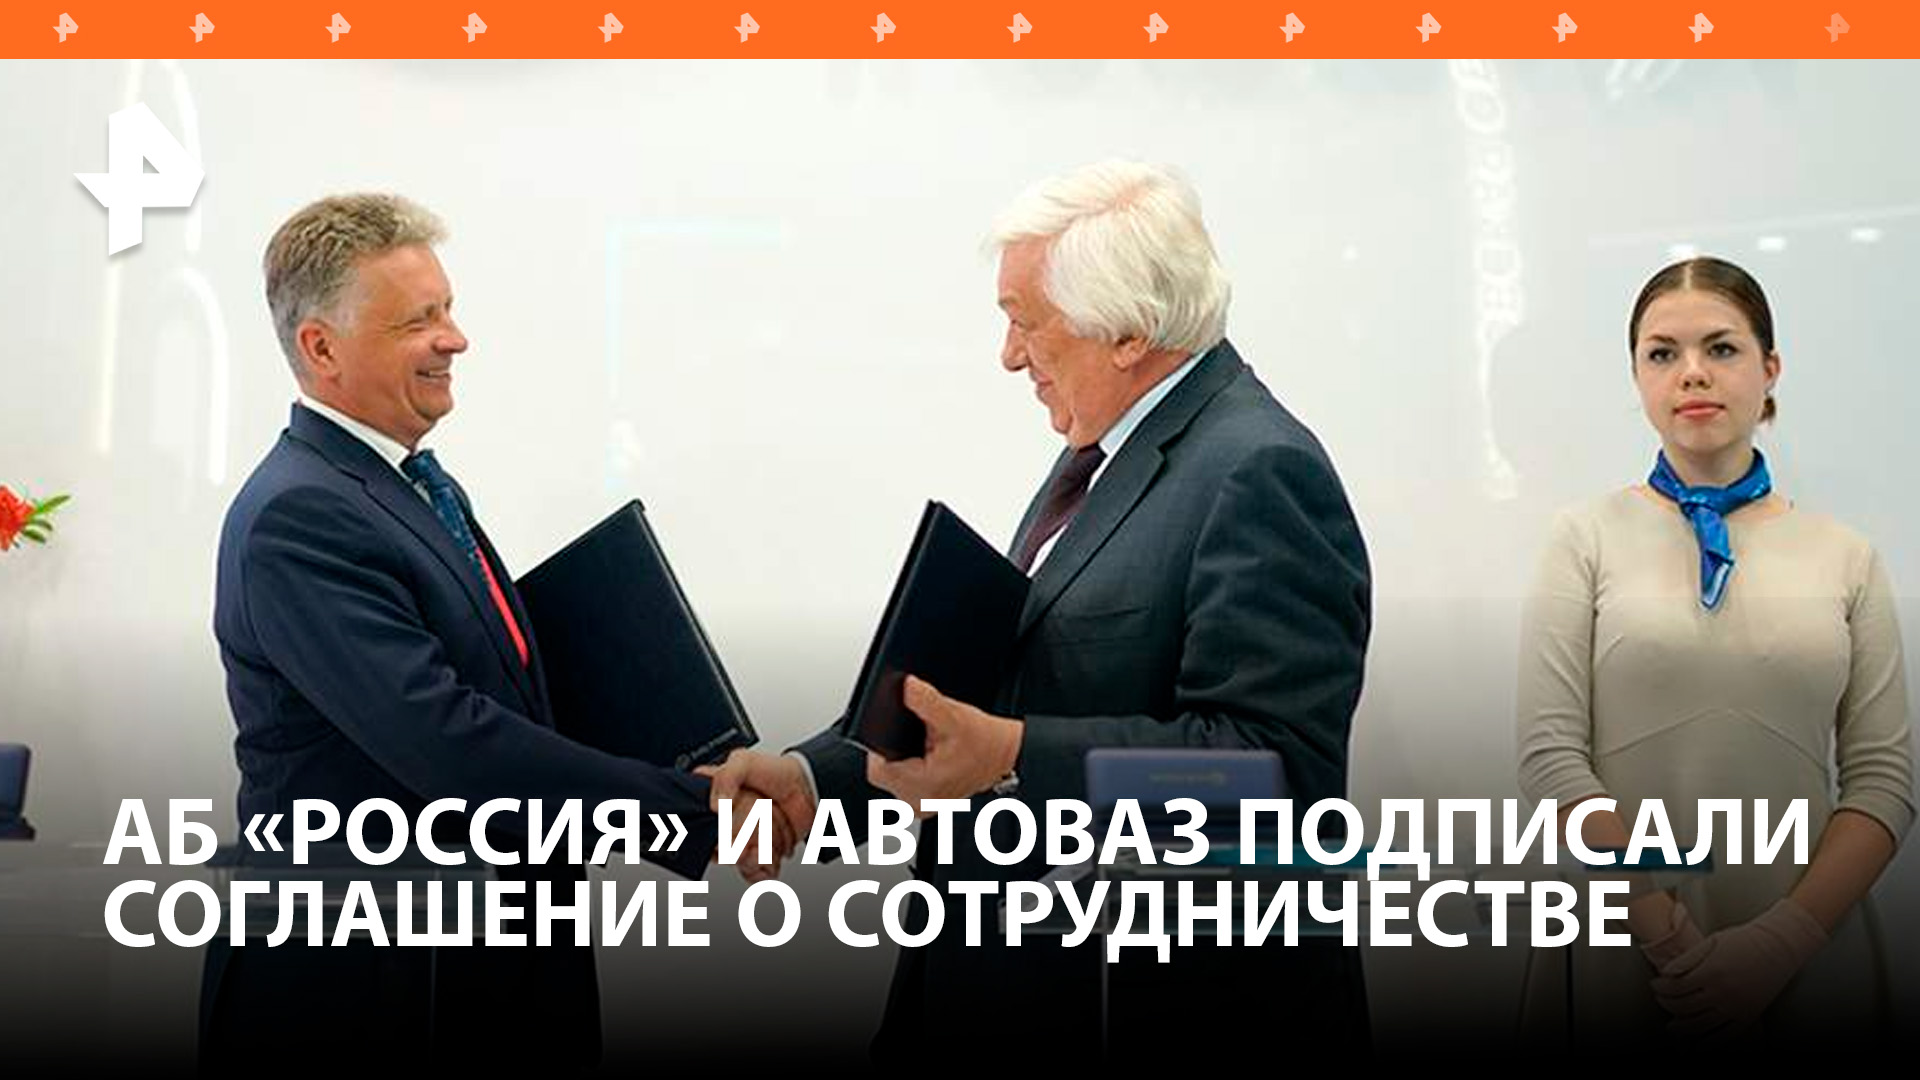 АБ РОССИЯ и АвтоВАЗ подписали соглашение о сотрудничестве